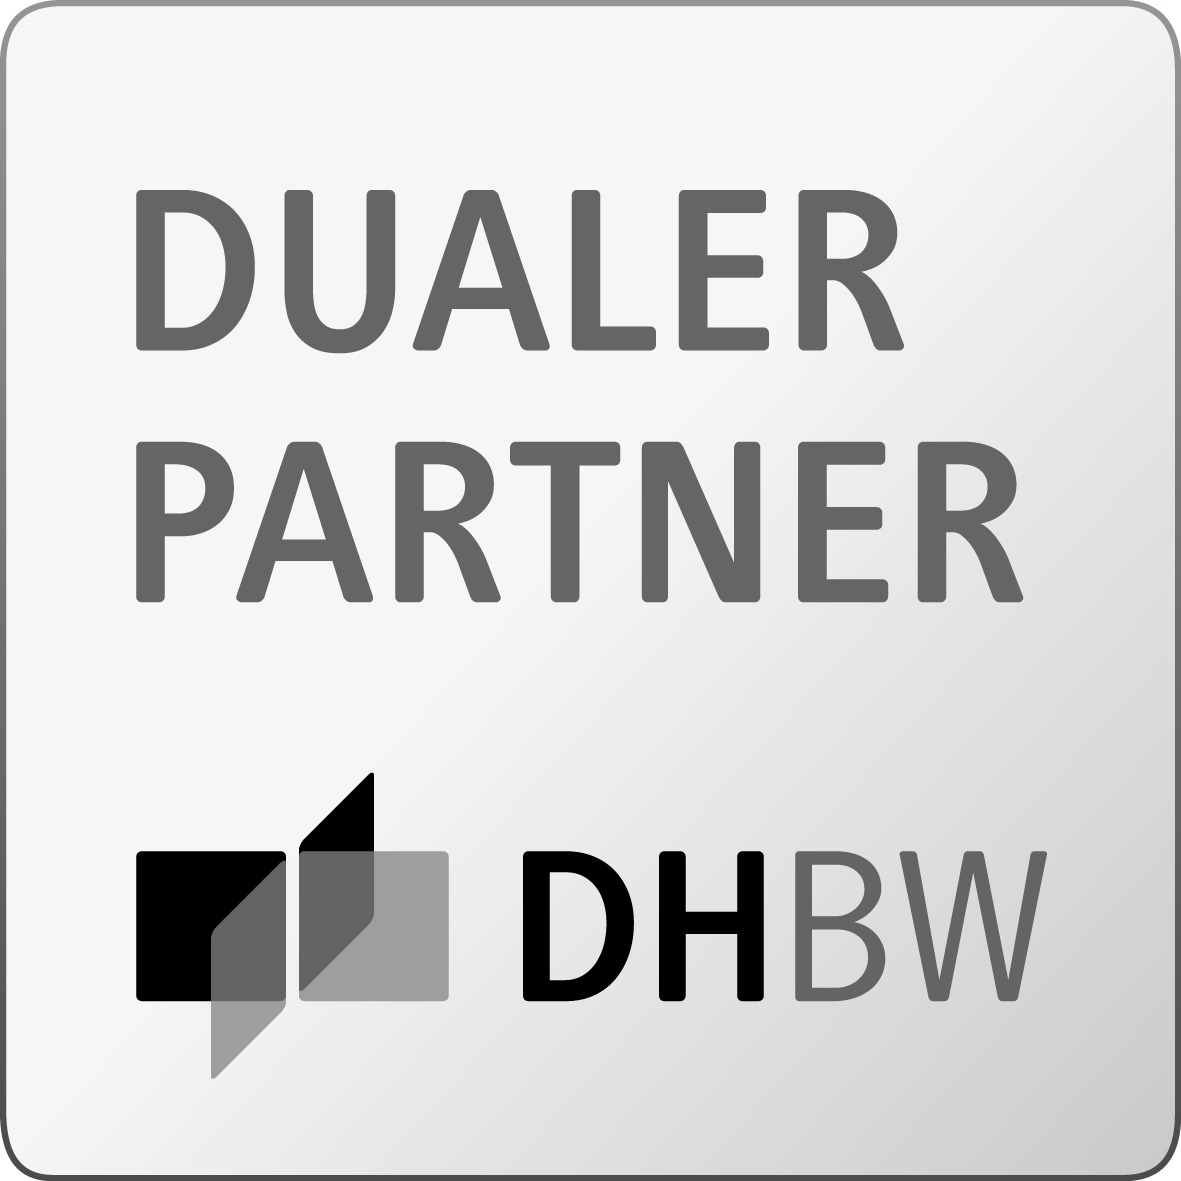 TAO is Dual Partner of DHBW